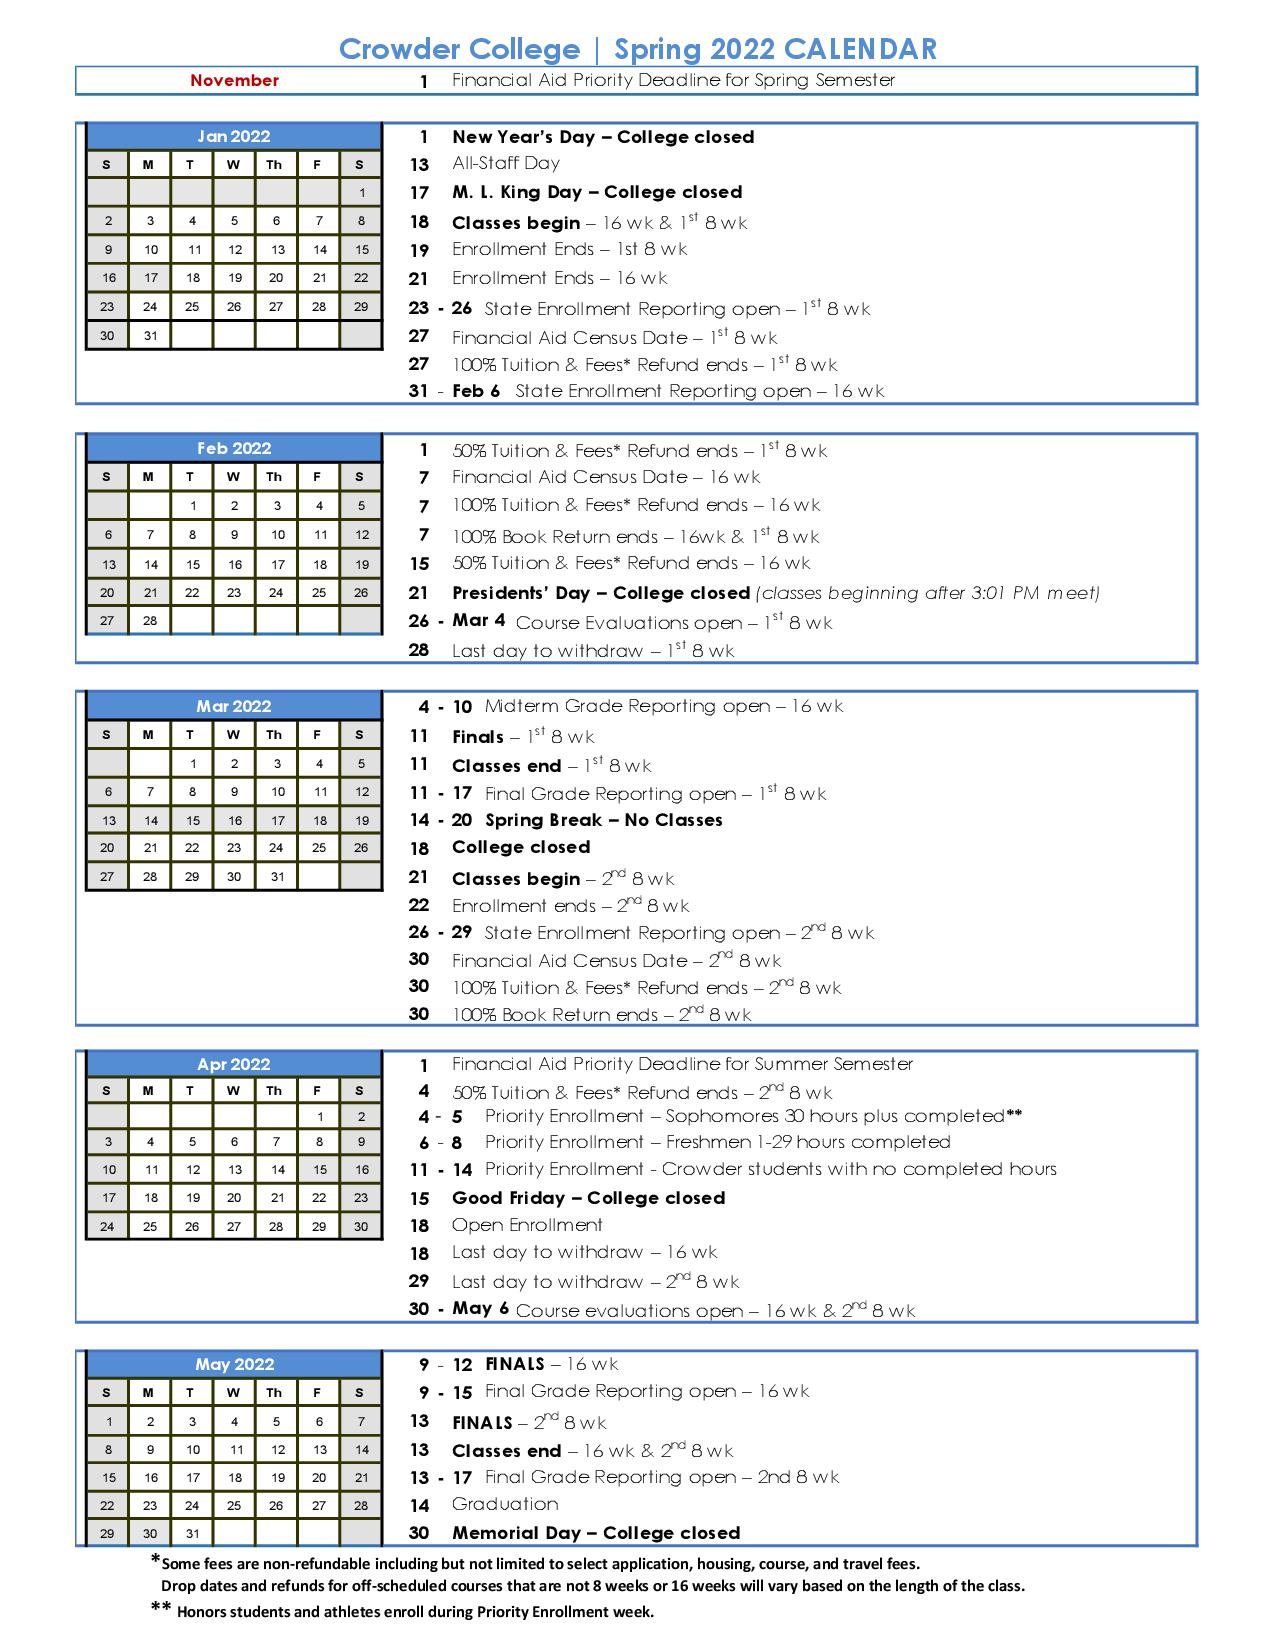 mizzou-2022-2023-academic-calendar-calendar2023